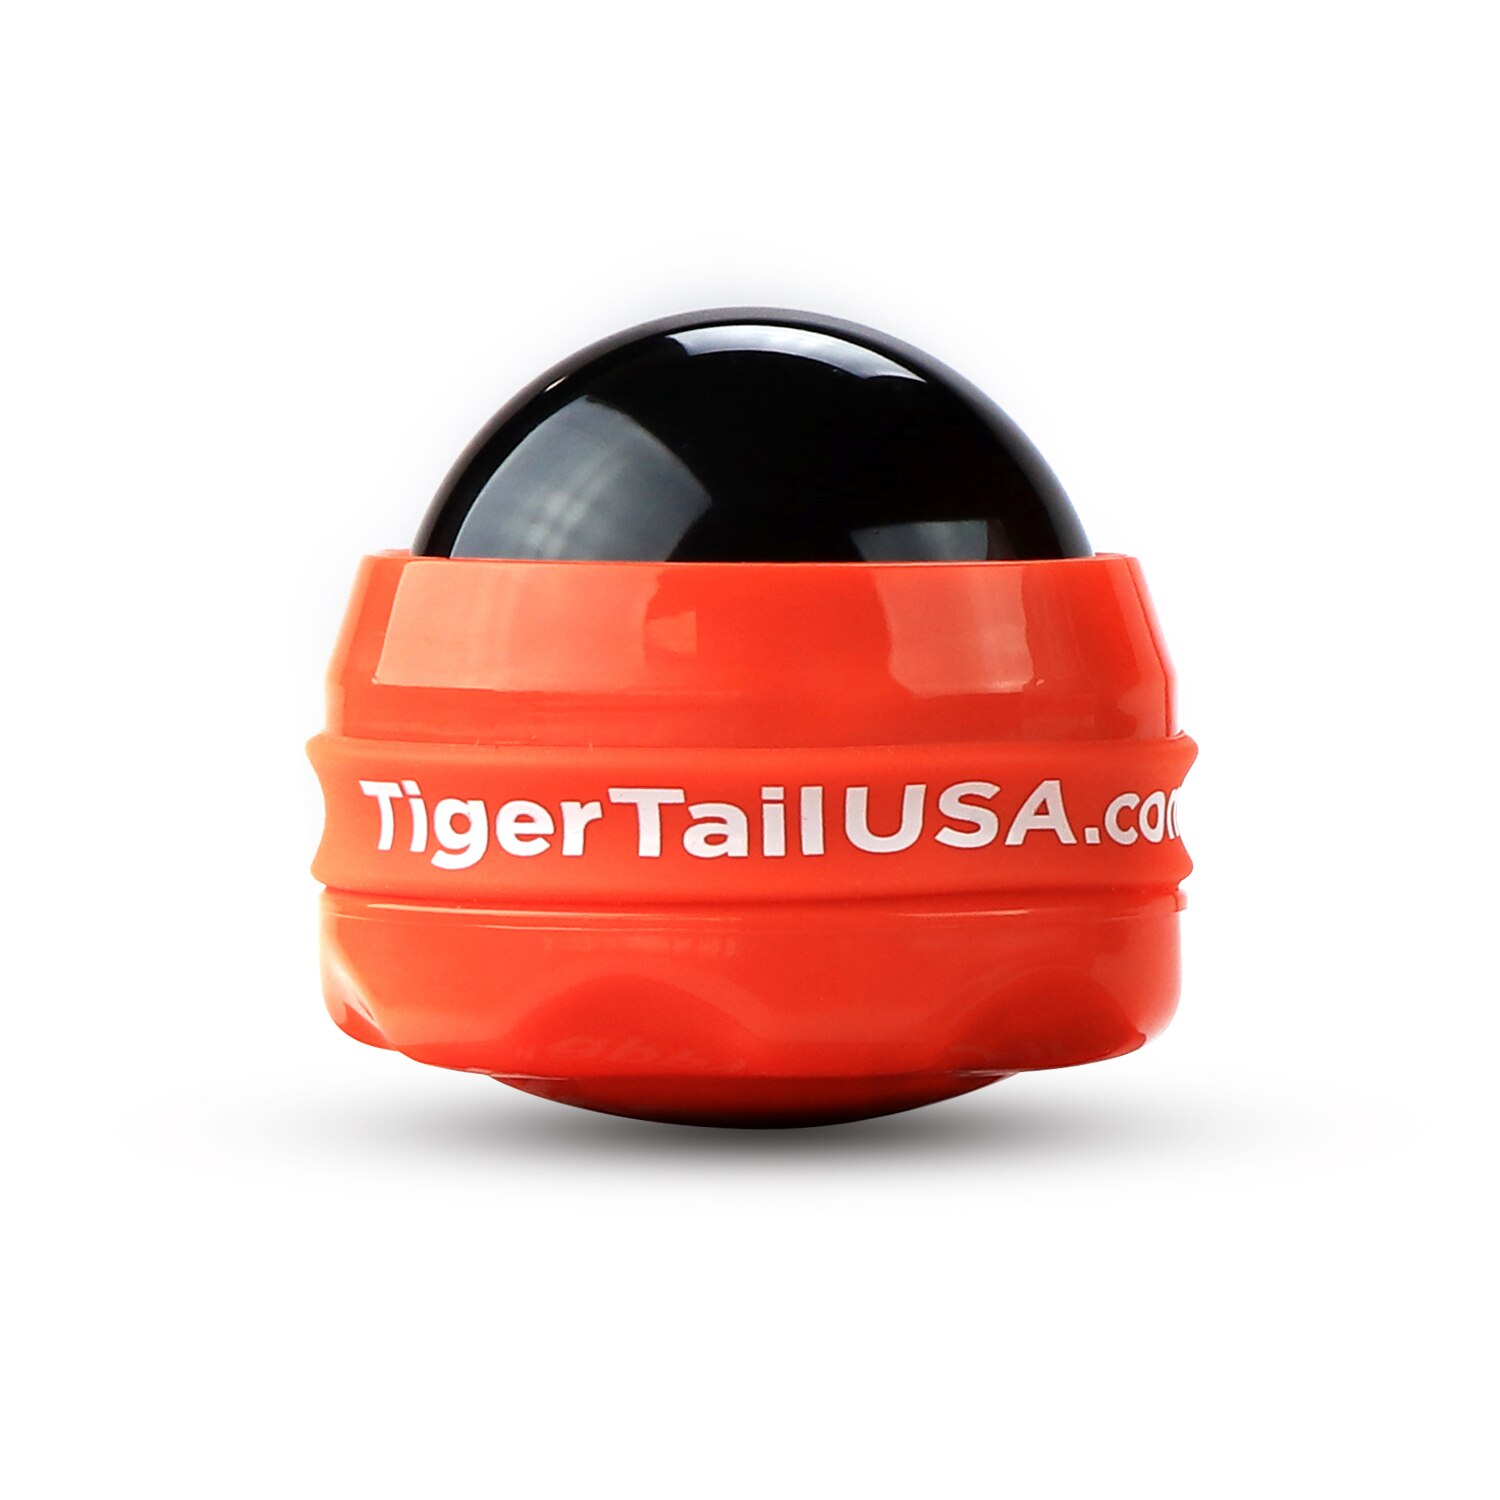 Tiger Tail Knotty Tiger Jr. Non-Slip Massage Roller Ball